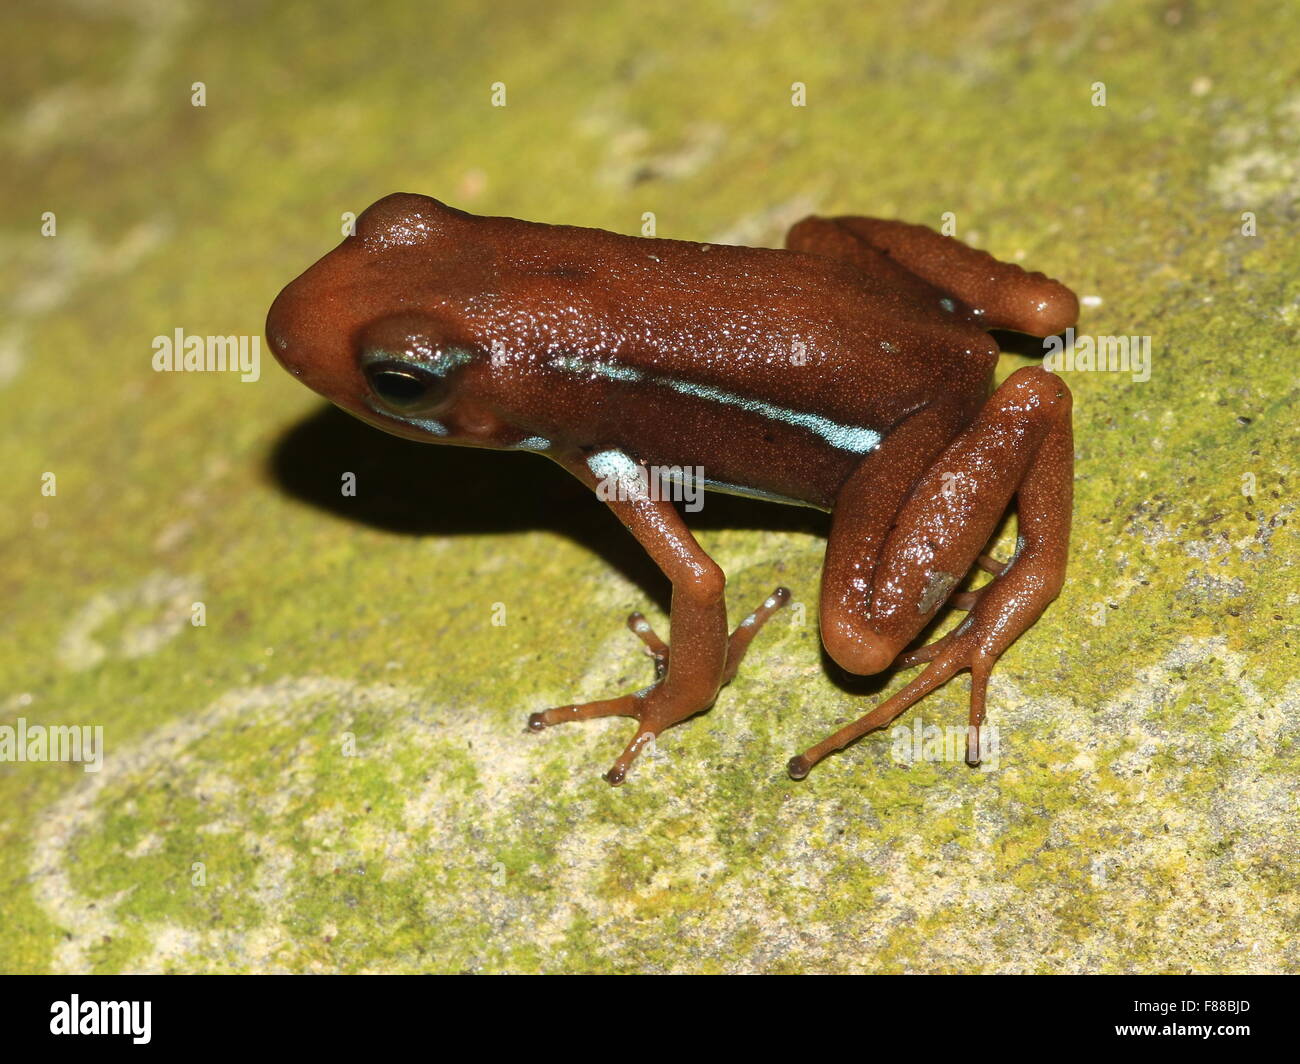 Brown variété de l'Anthony's poison arrow frog (Epipedobates anthonyi), originaire de l'Équateur et le Pérou Banque D'Images